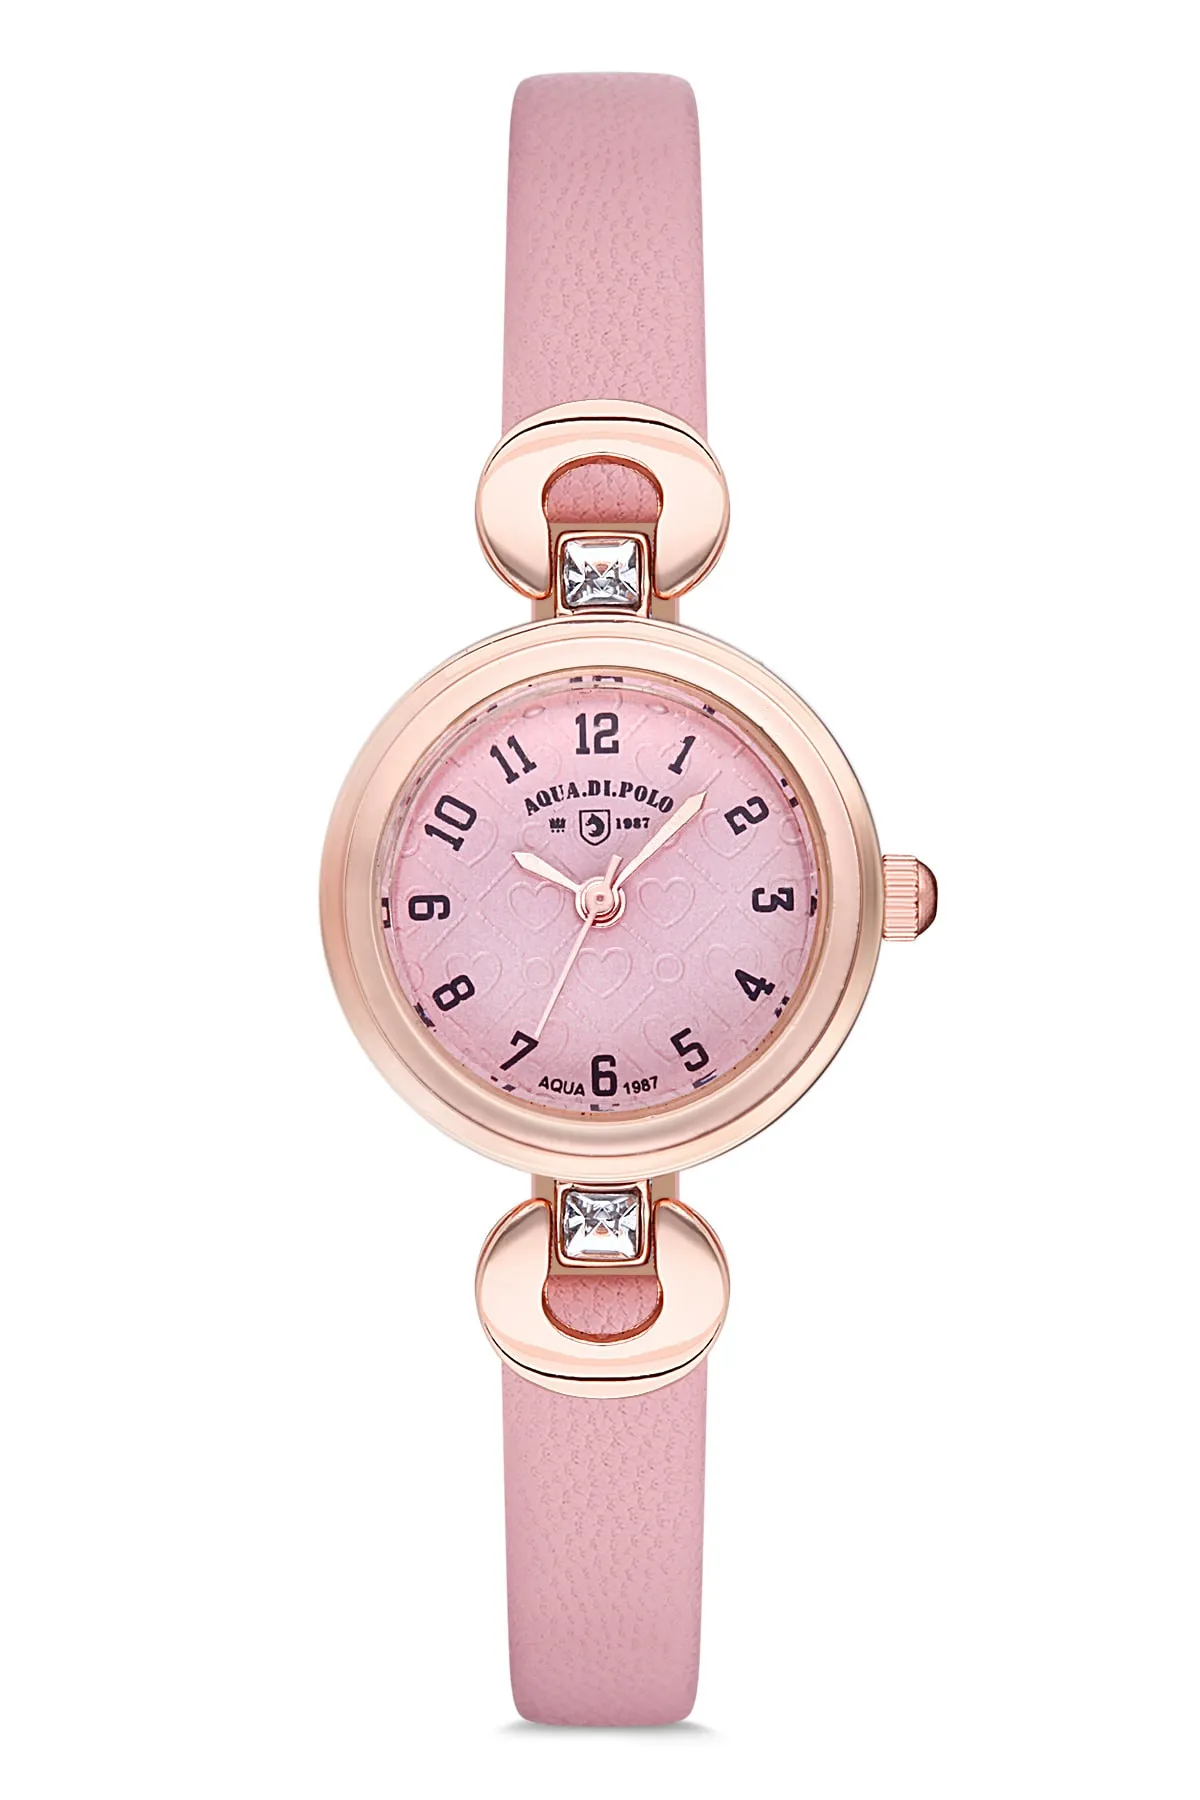 Кожаные женские наручные часы Di Polo apwa030902#2